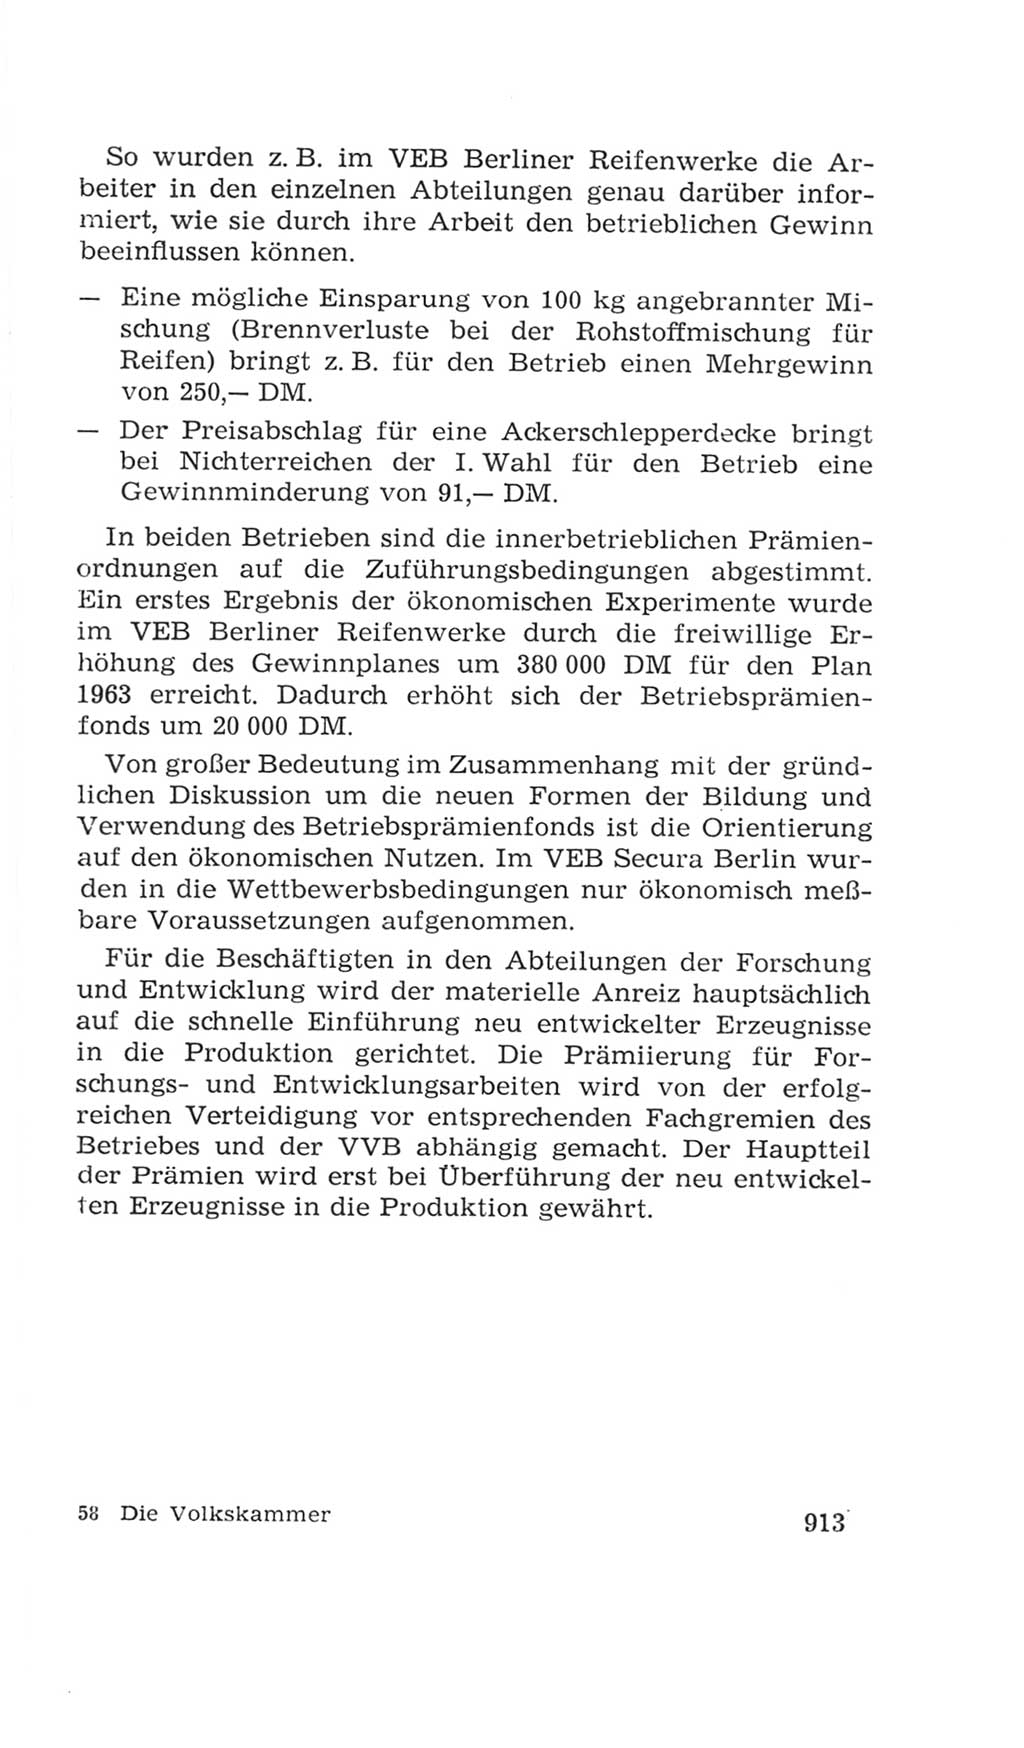 Volkskammer (VK) der Deutschen Demokratischen Republik (DDR), 4. Wahlperiode 1963-1967, Seite 913 (VK. DDR 4. WP. 1963-1967, S. 913)